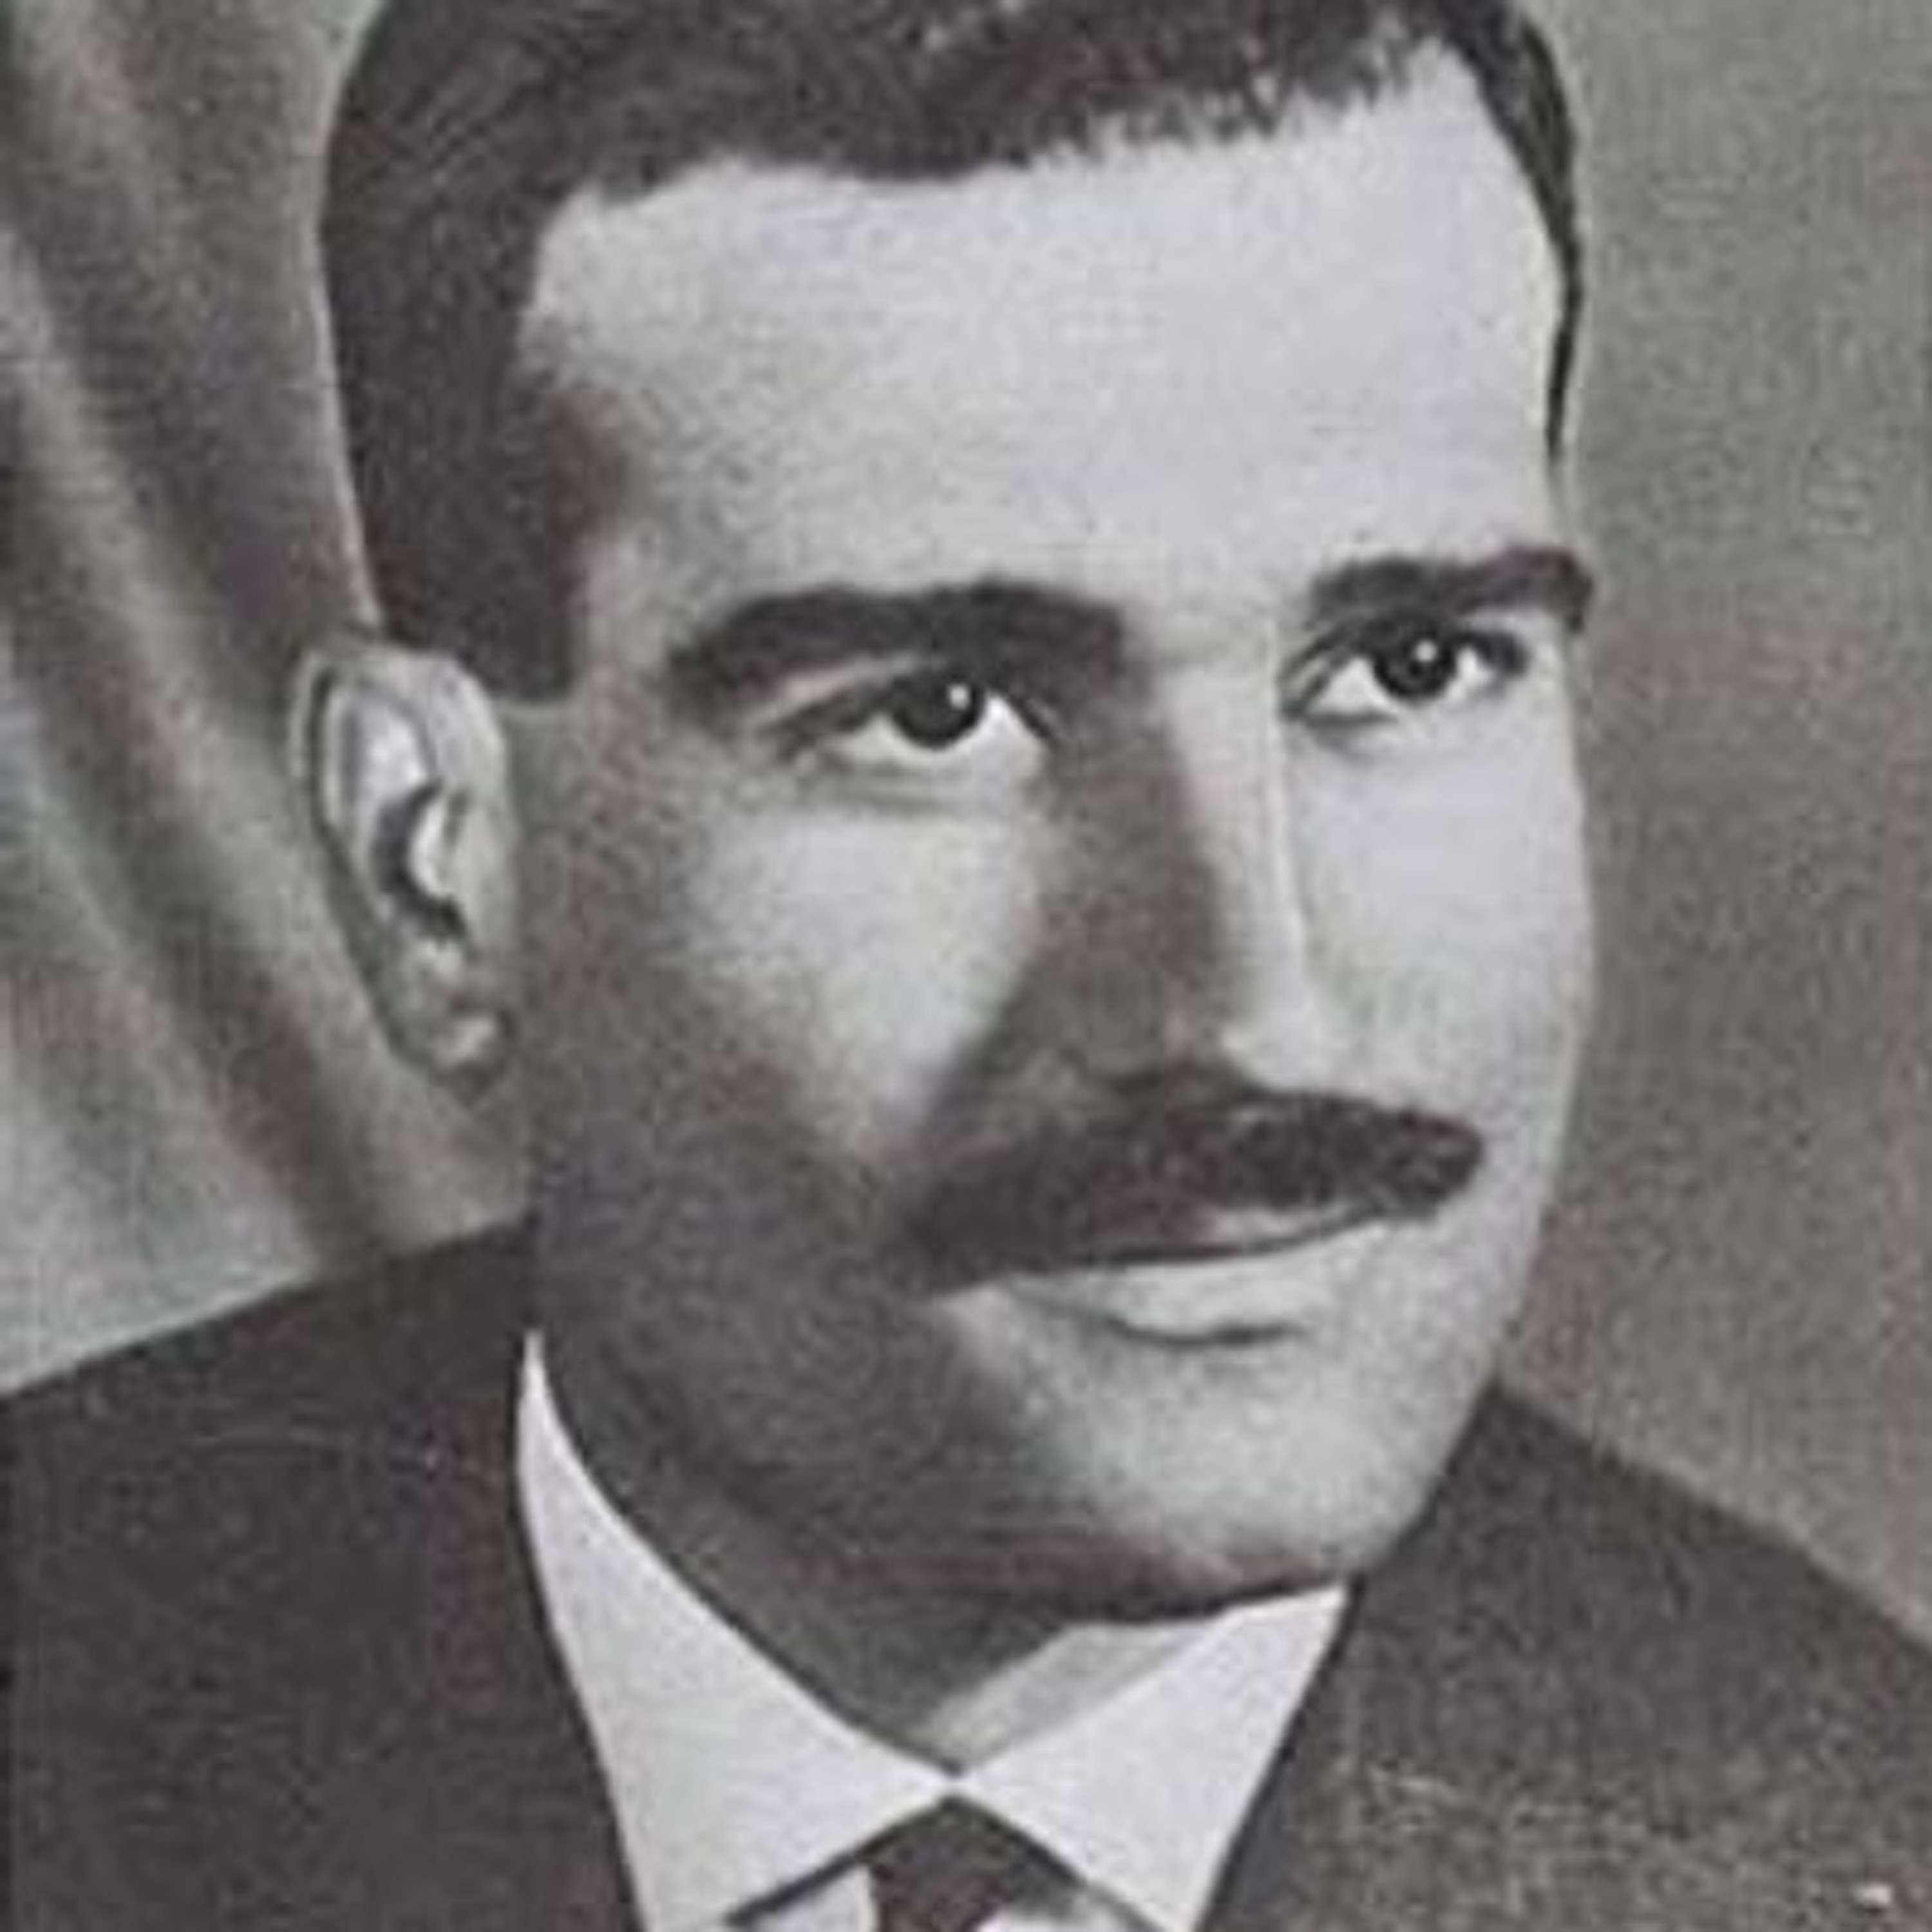 55. Kamel Amin Thaabet